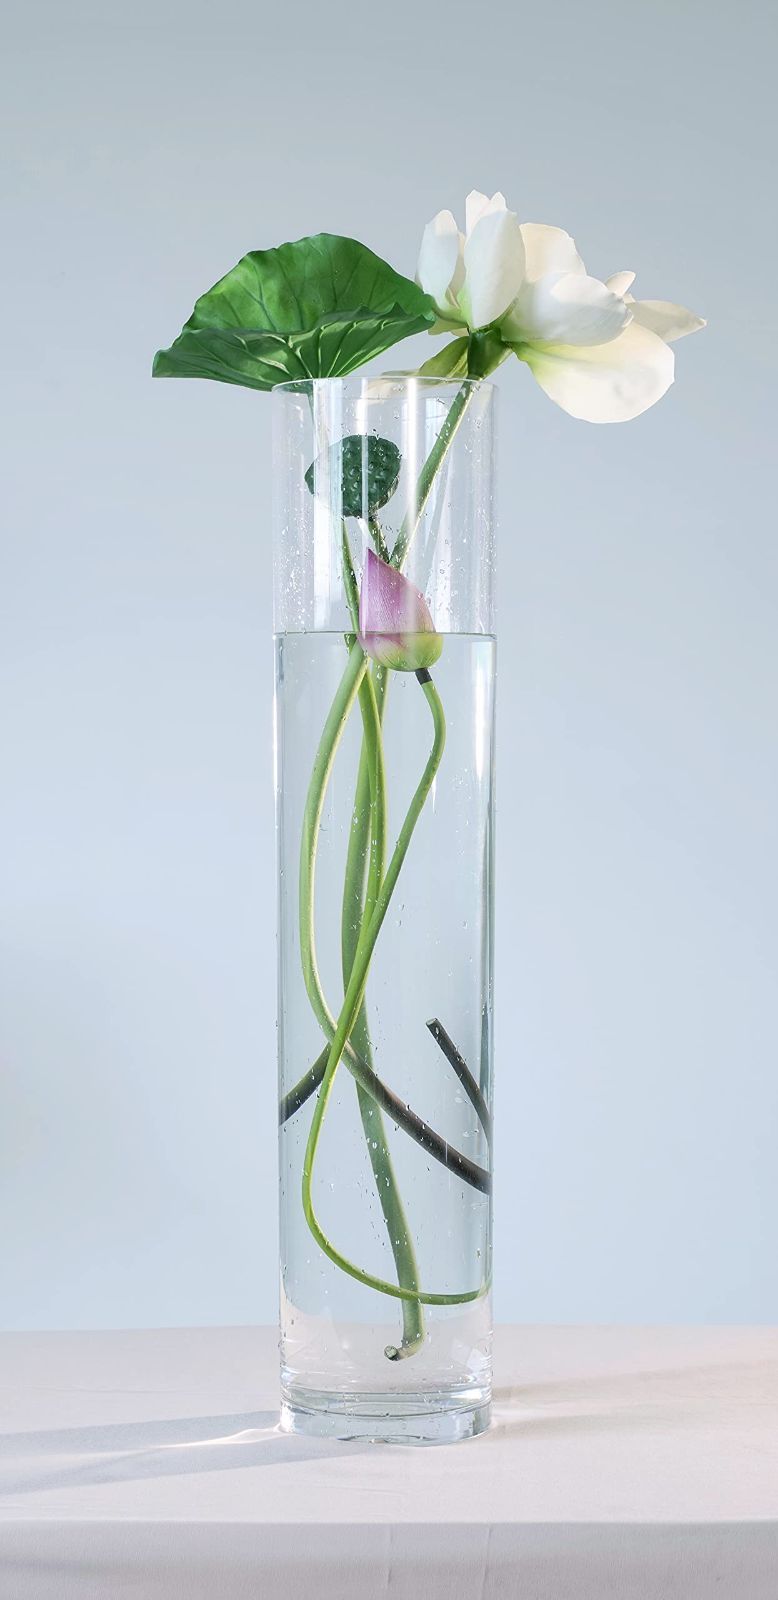 ホワイエ HAMMER GLASS (ハンマーグラス) クリスタMOSAIC 10xH25 花瓶 クリスタル クリア 割れない ポリカーボネート